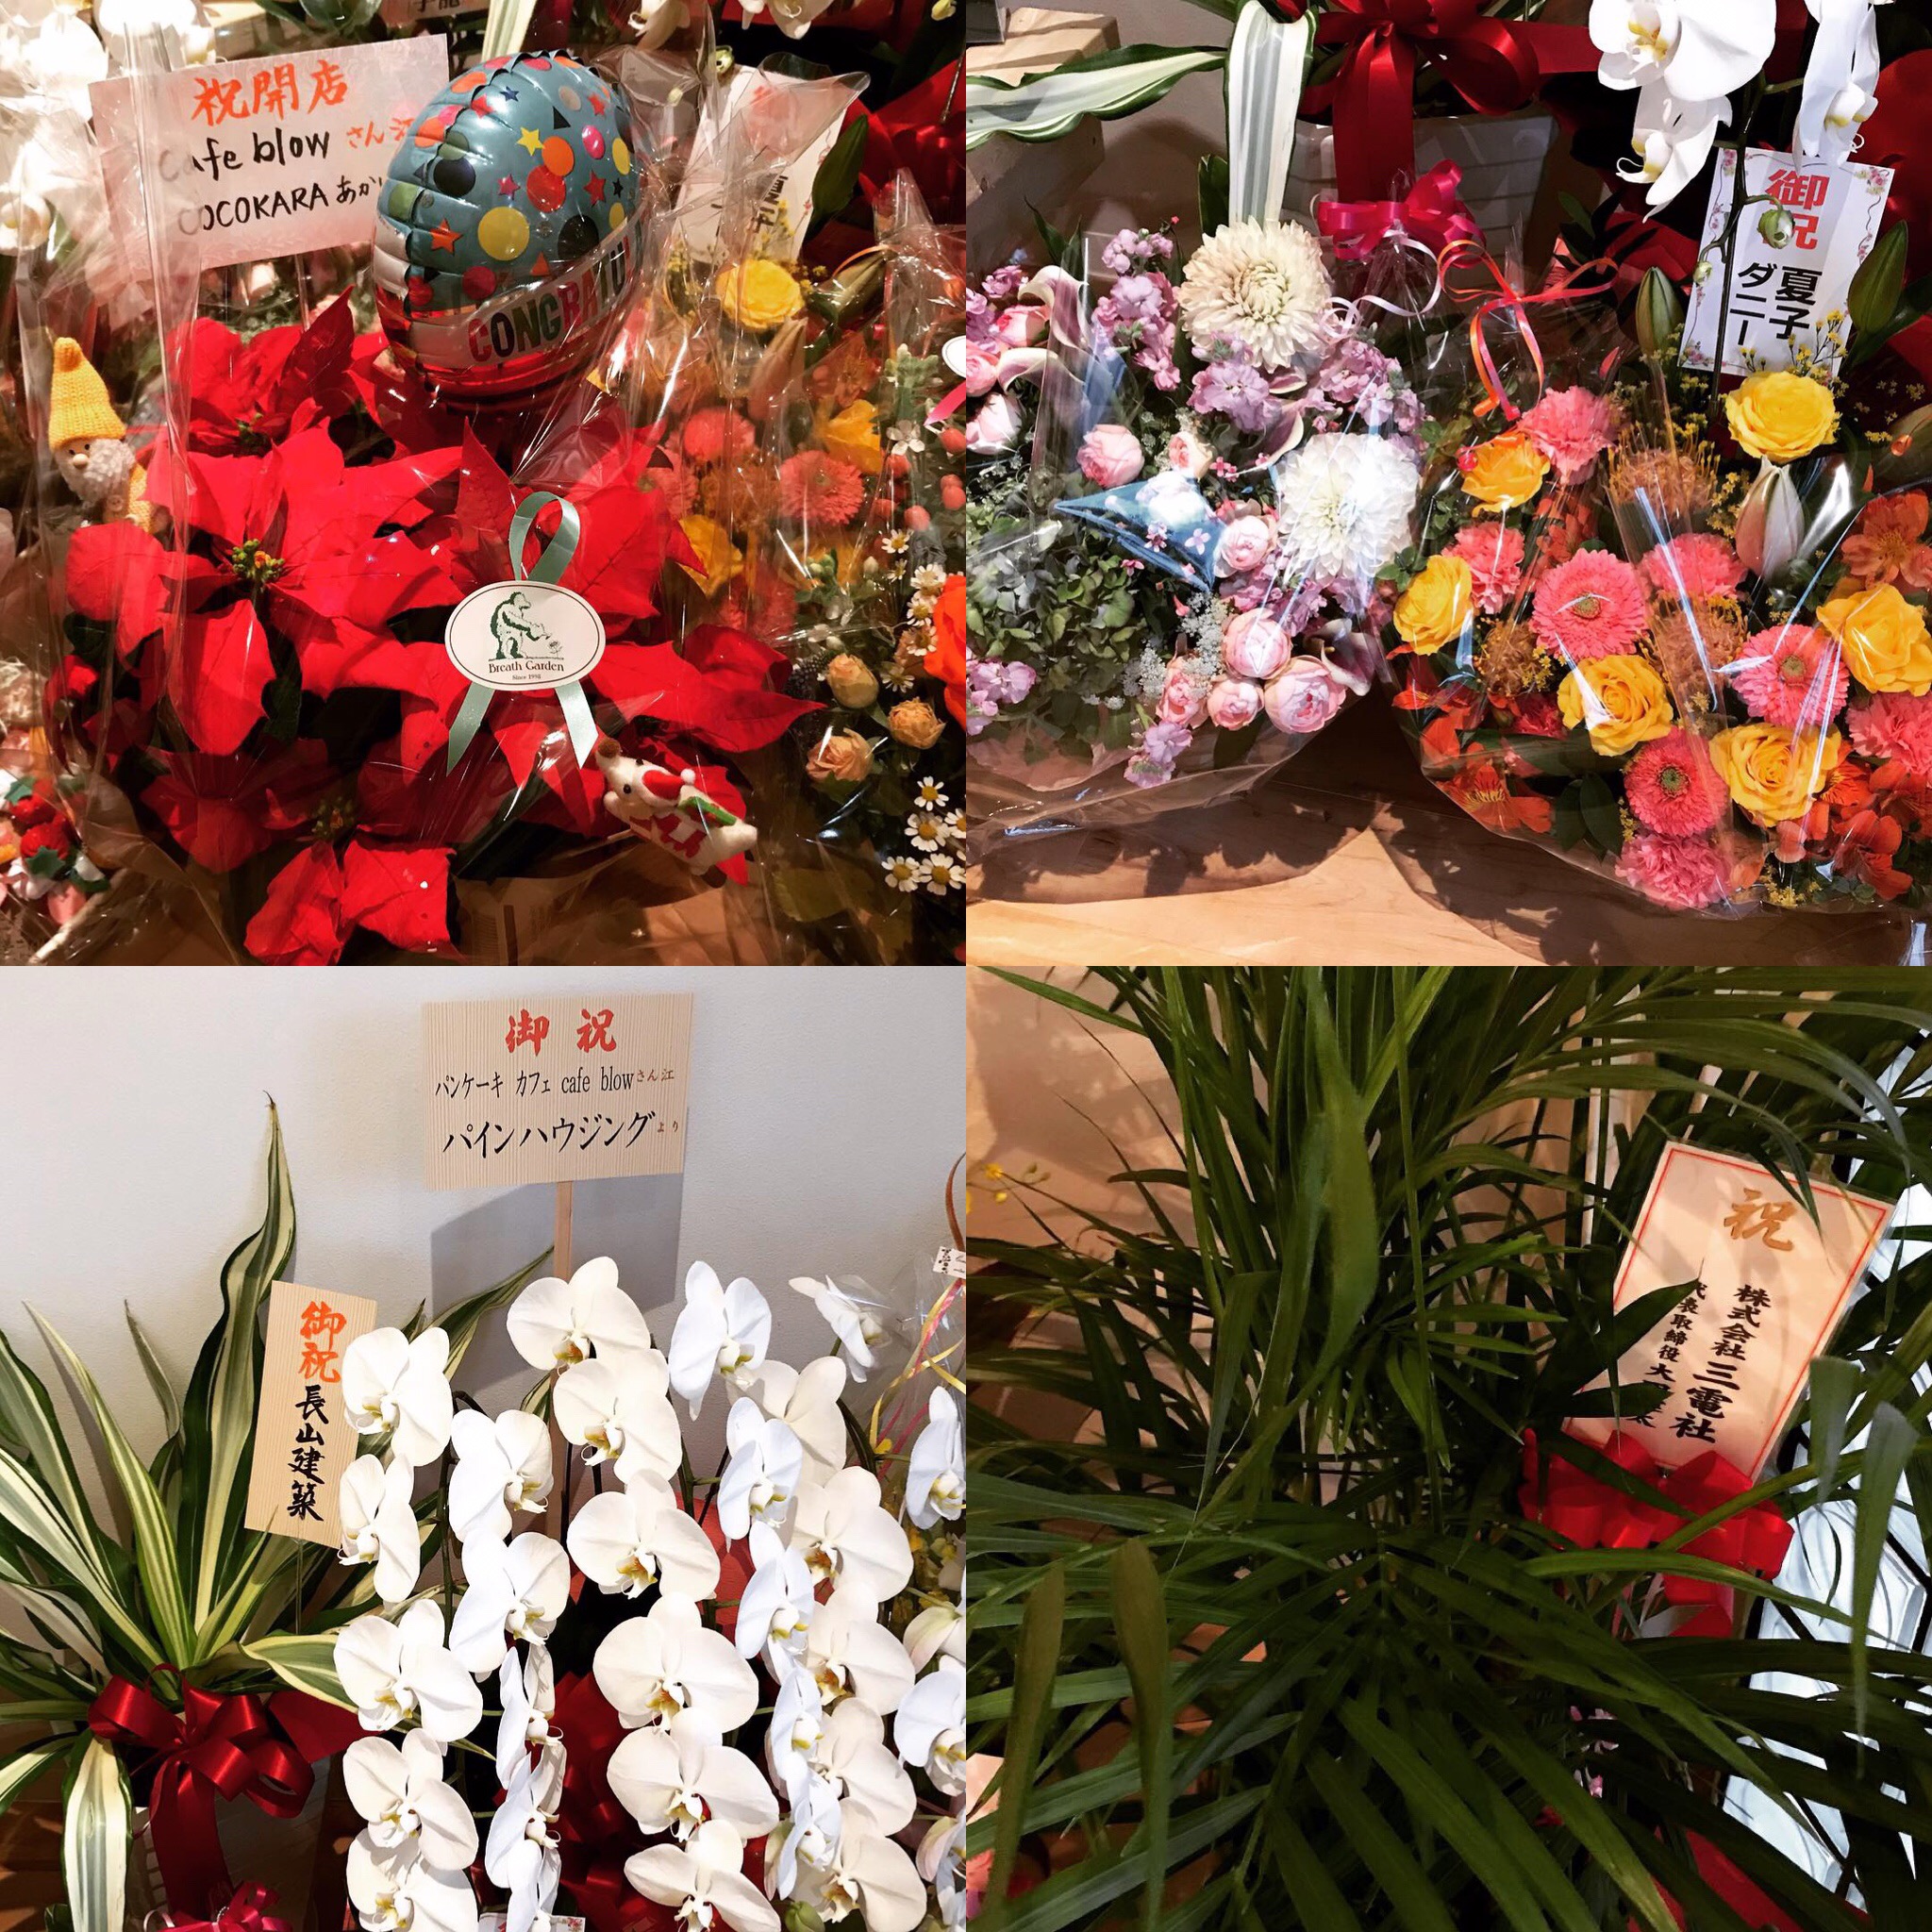 たくさんのお祝いのお言葉とお花をありがとうございました 泉佐野市と和泉市のパンケーキカフェ Cafeblow